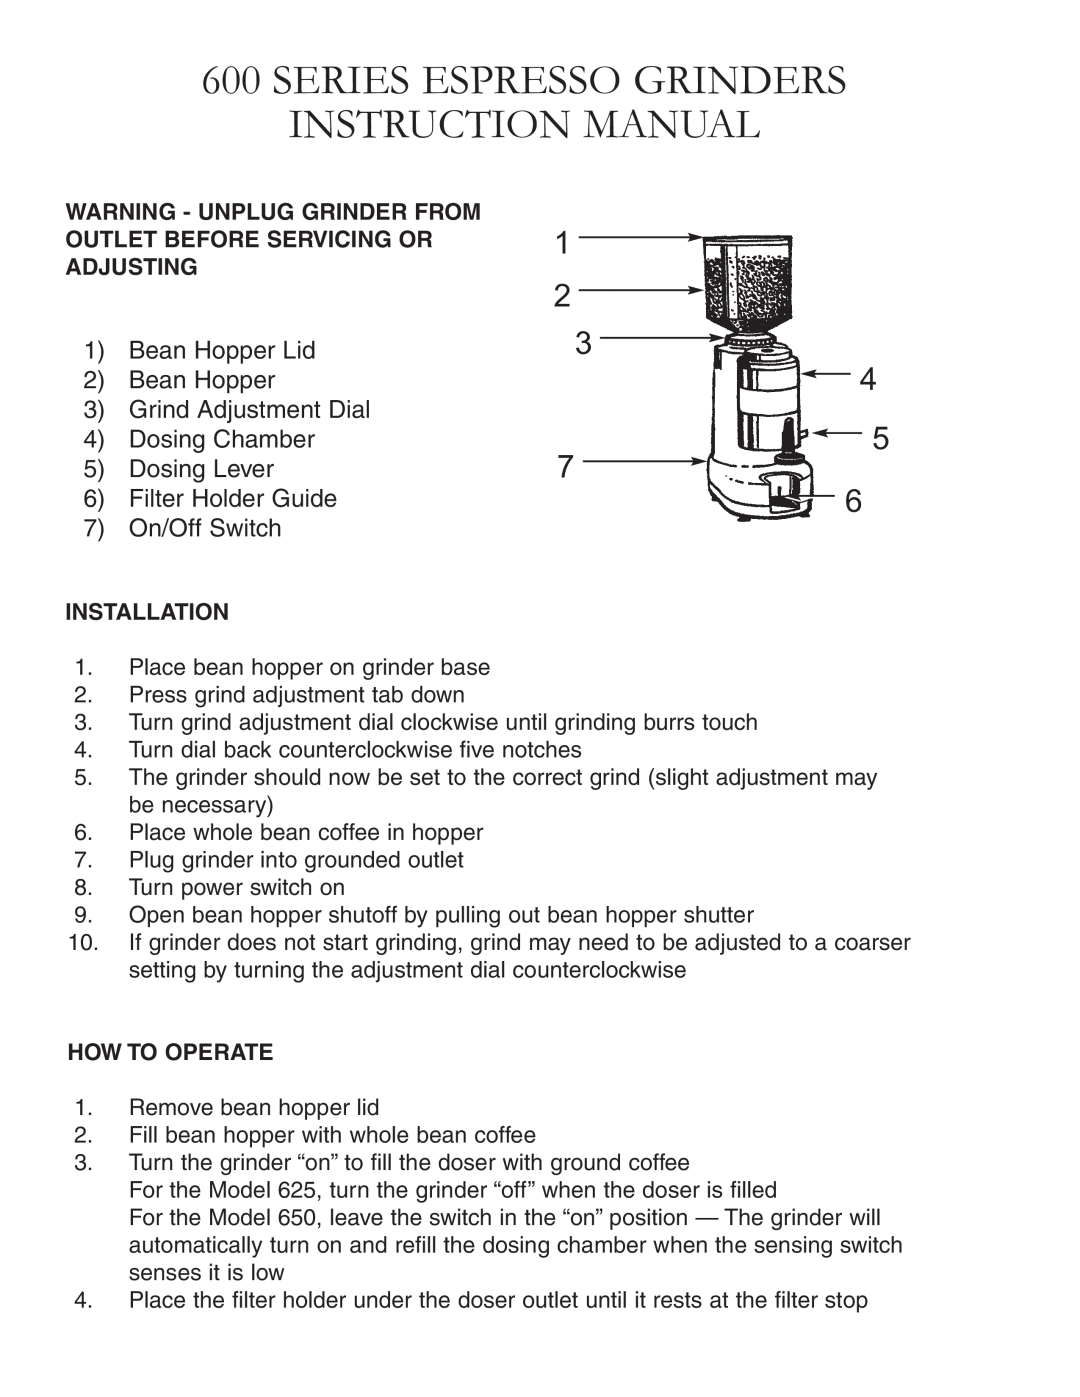 Grindmaster 625, 650 Series Espresso Grinders Instruction Manual, Bean Hopper Lid 2 Bean Hopper 3 Grind Adjustment Dial 